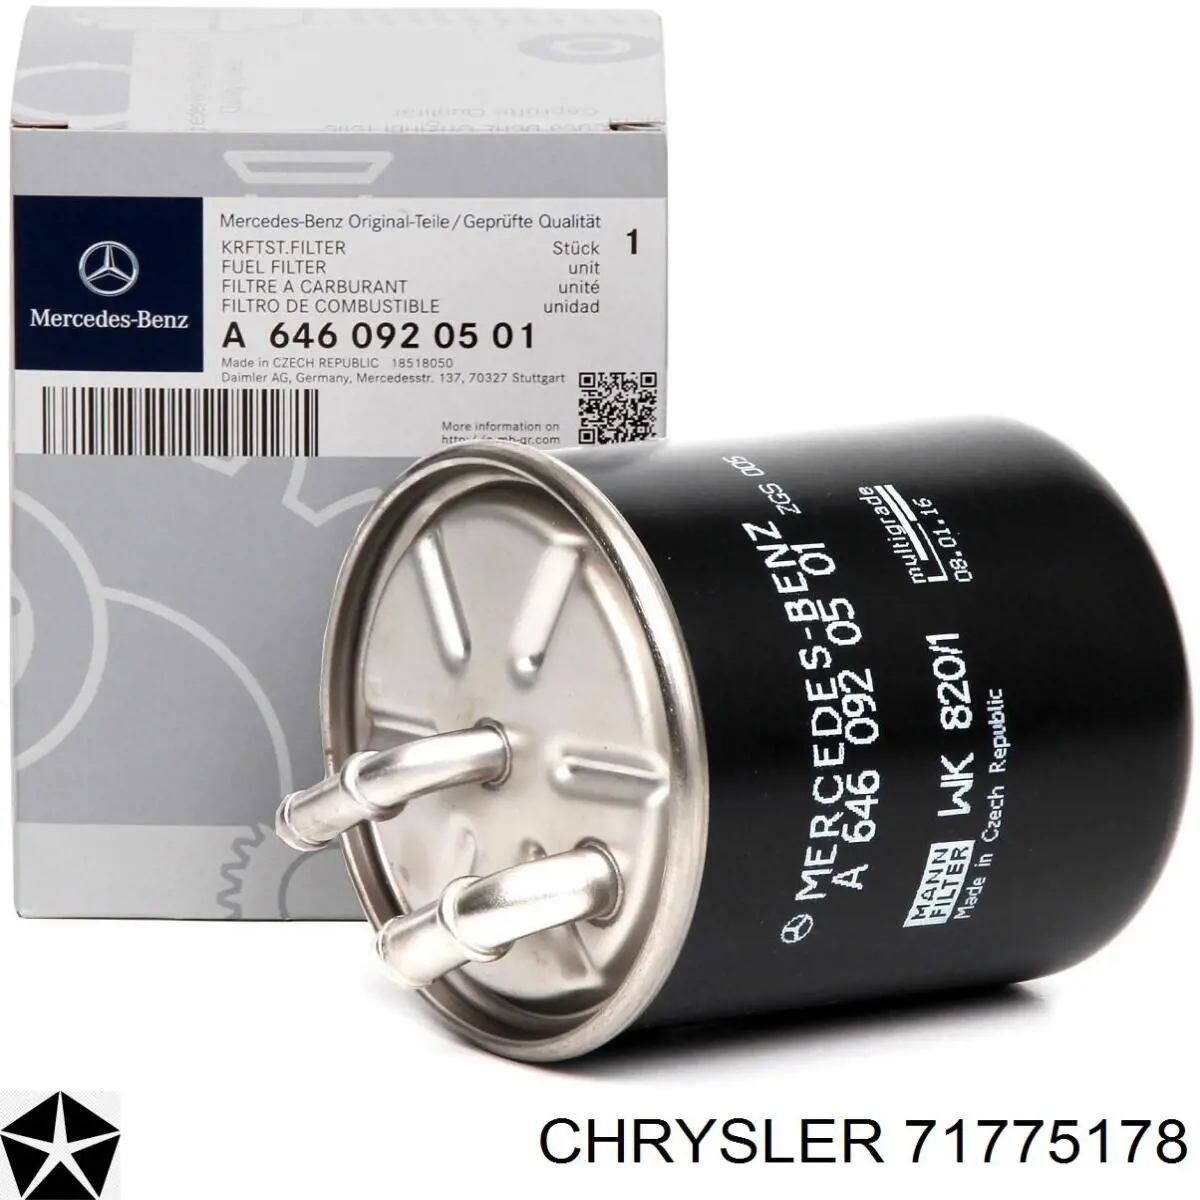 71775178 Chrysler filtro de combustible